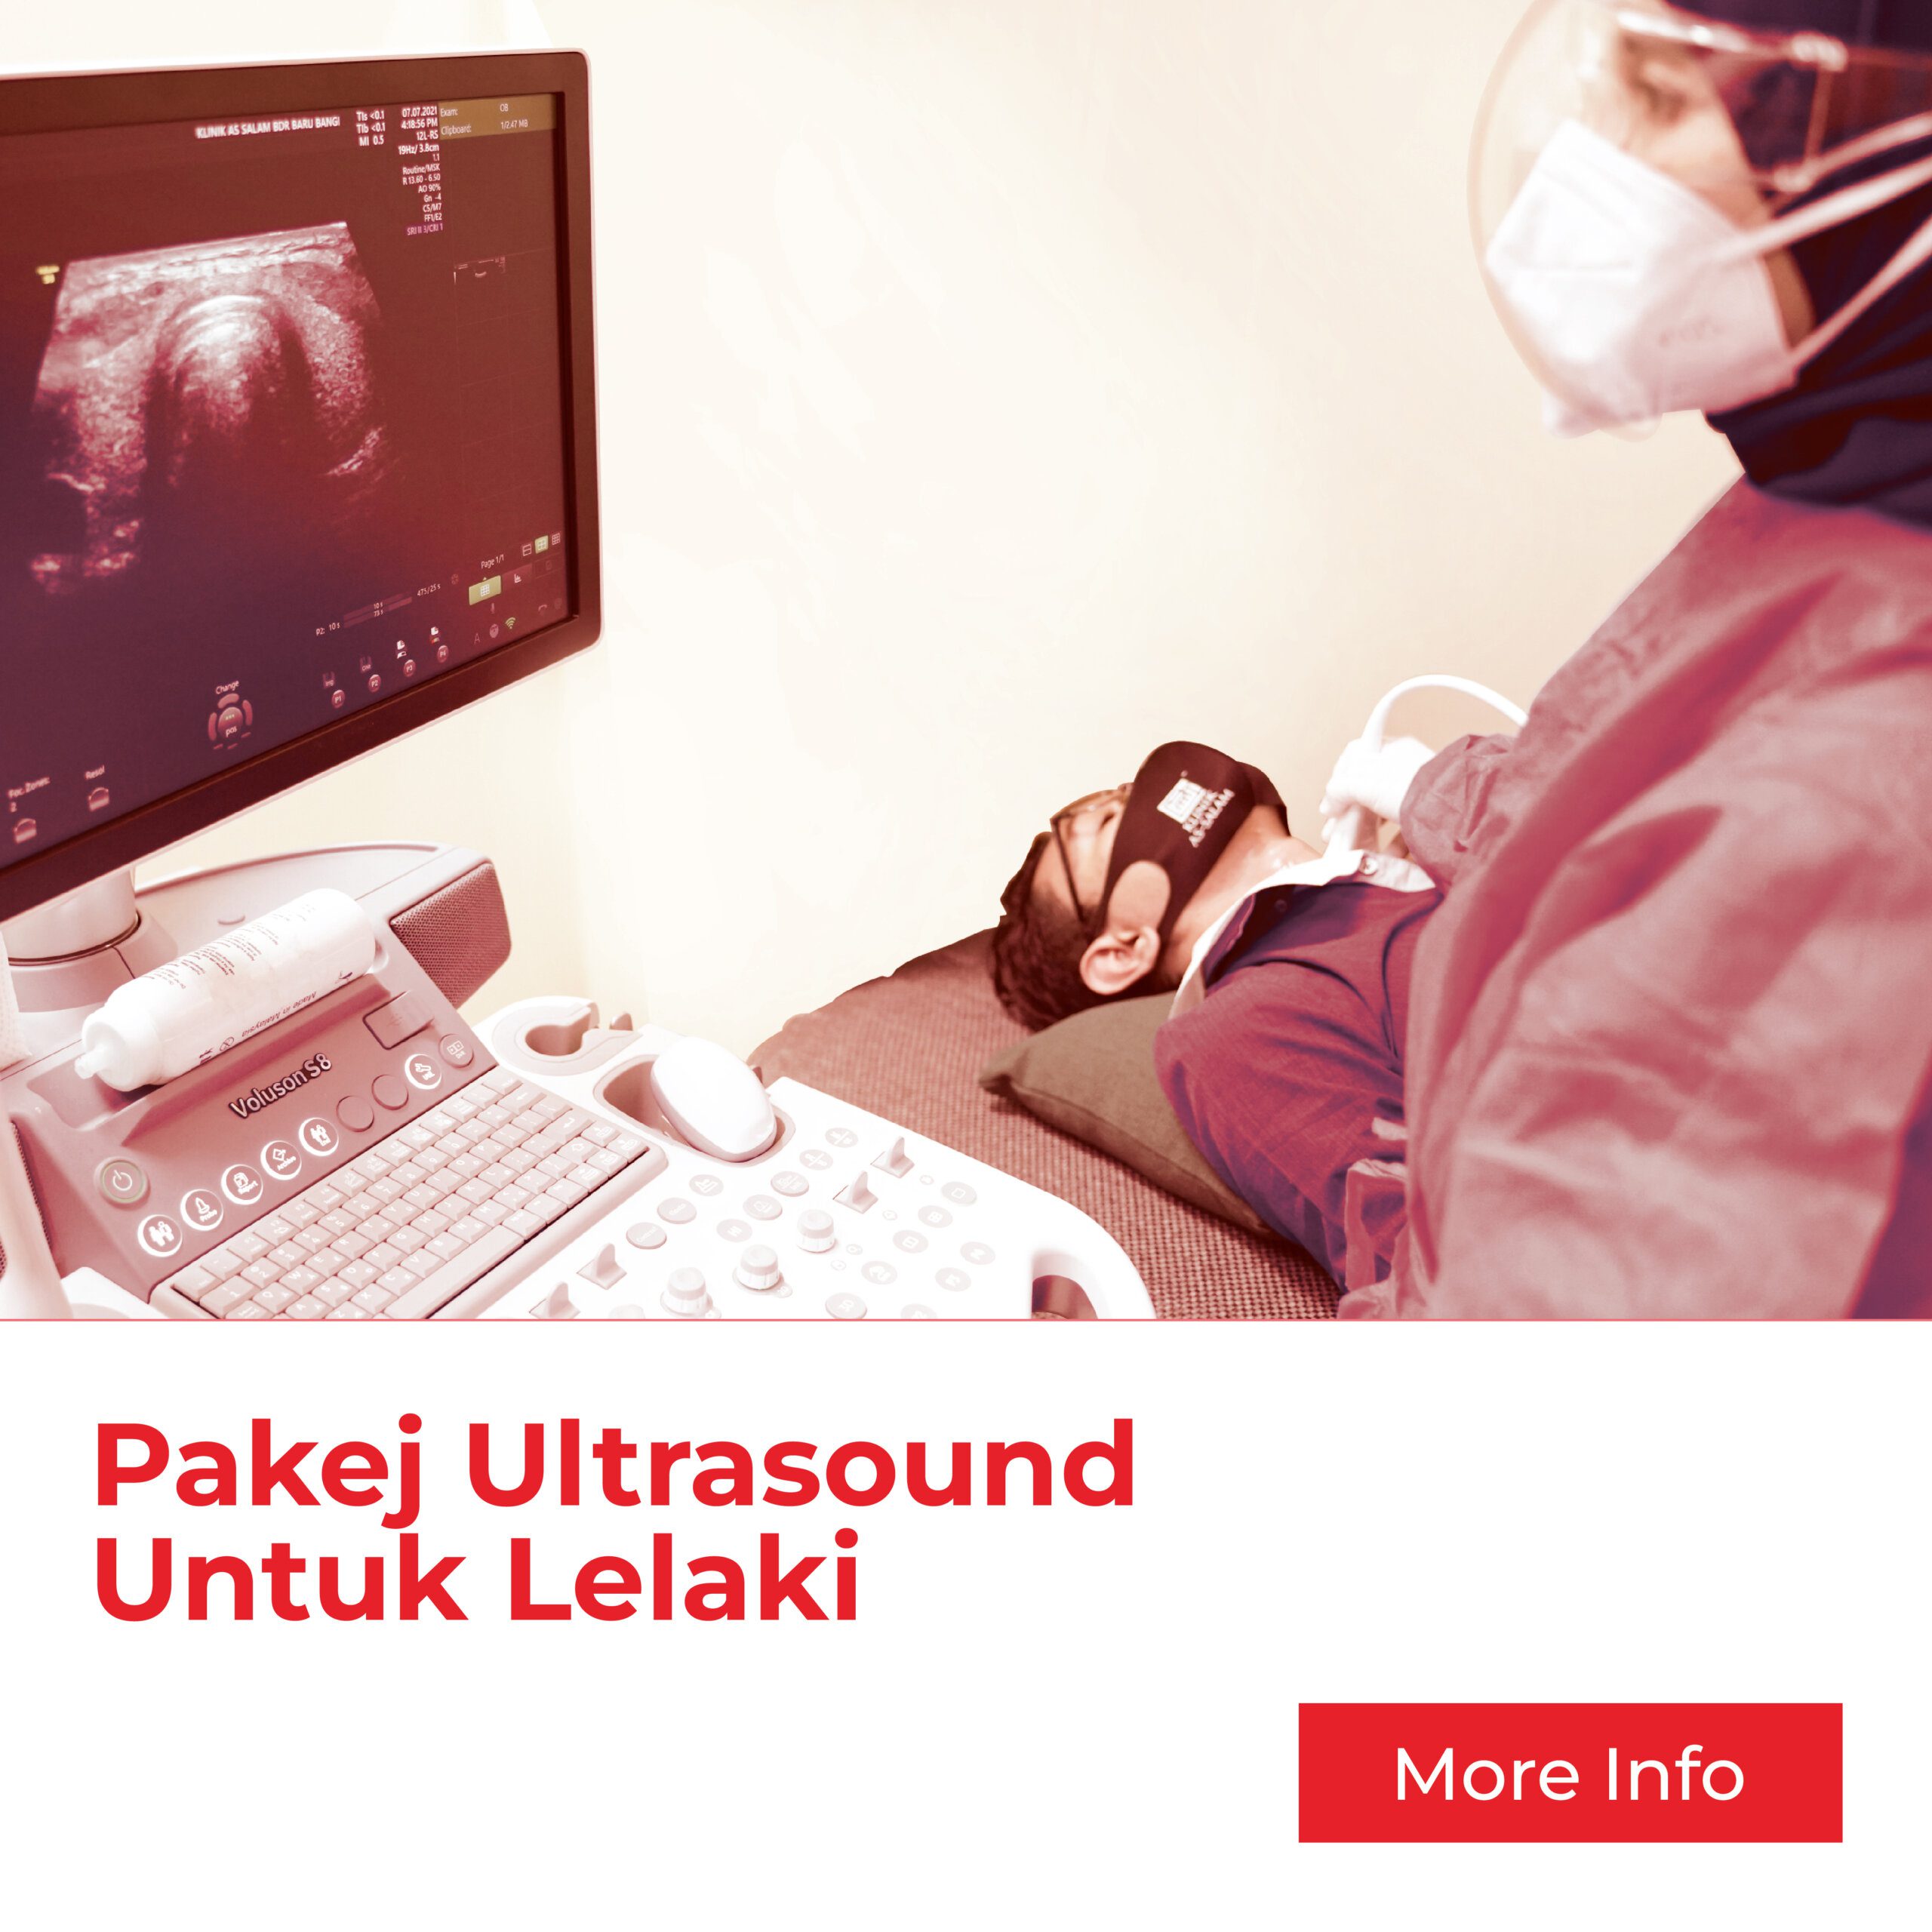 Pakej Ultrasound Lelaki daripada klinik salam untuk check sistem pembiakan lelaki & menjaga kesihatan